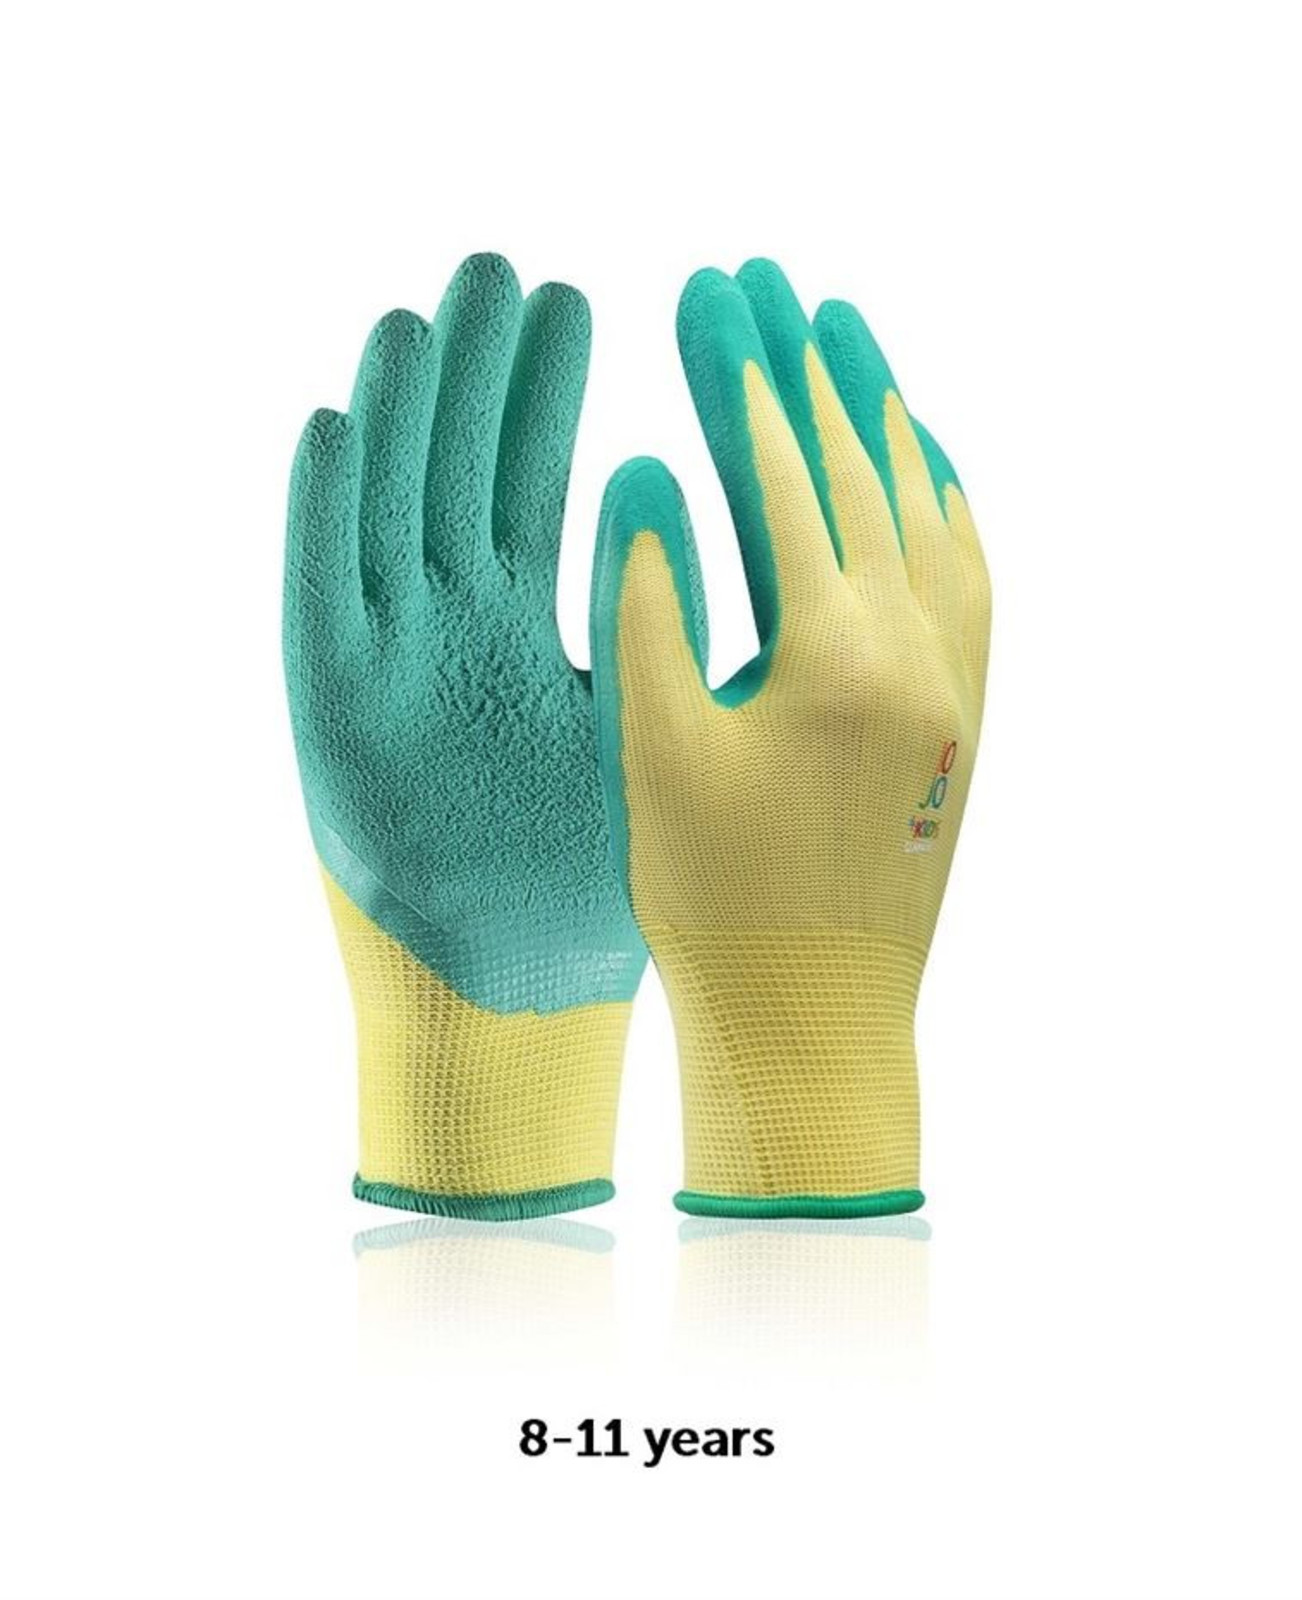 Detské pracovné rukavice Ardon Jojo - veľkosť: 8-11 rokov, farba: zelená/žltá